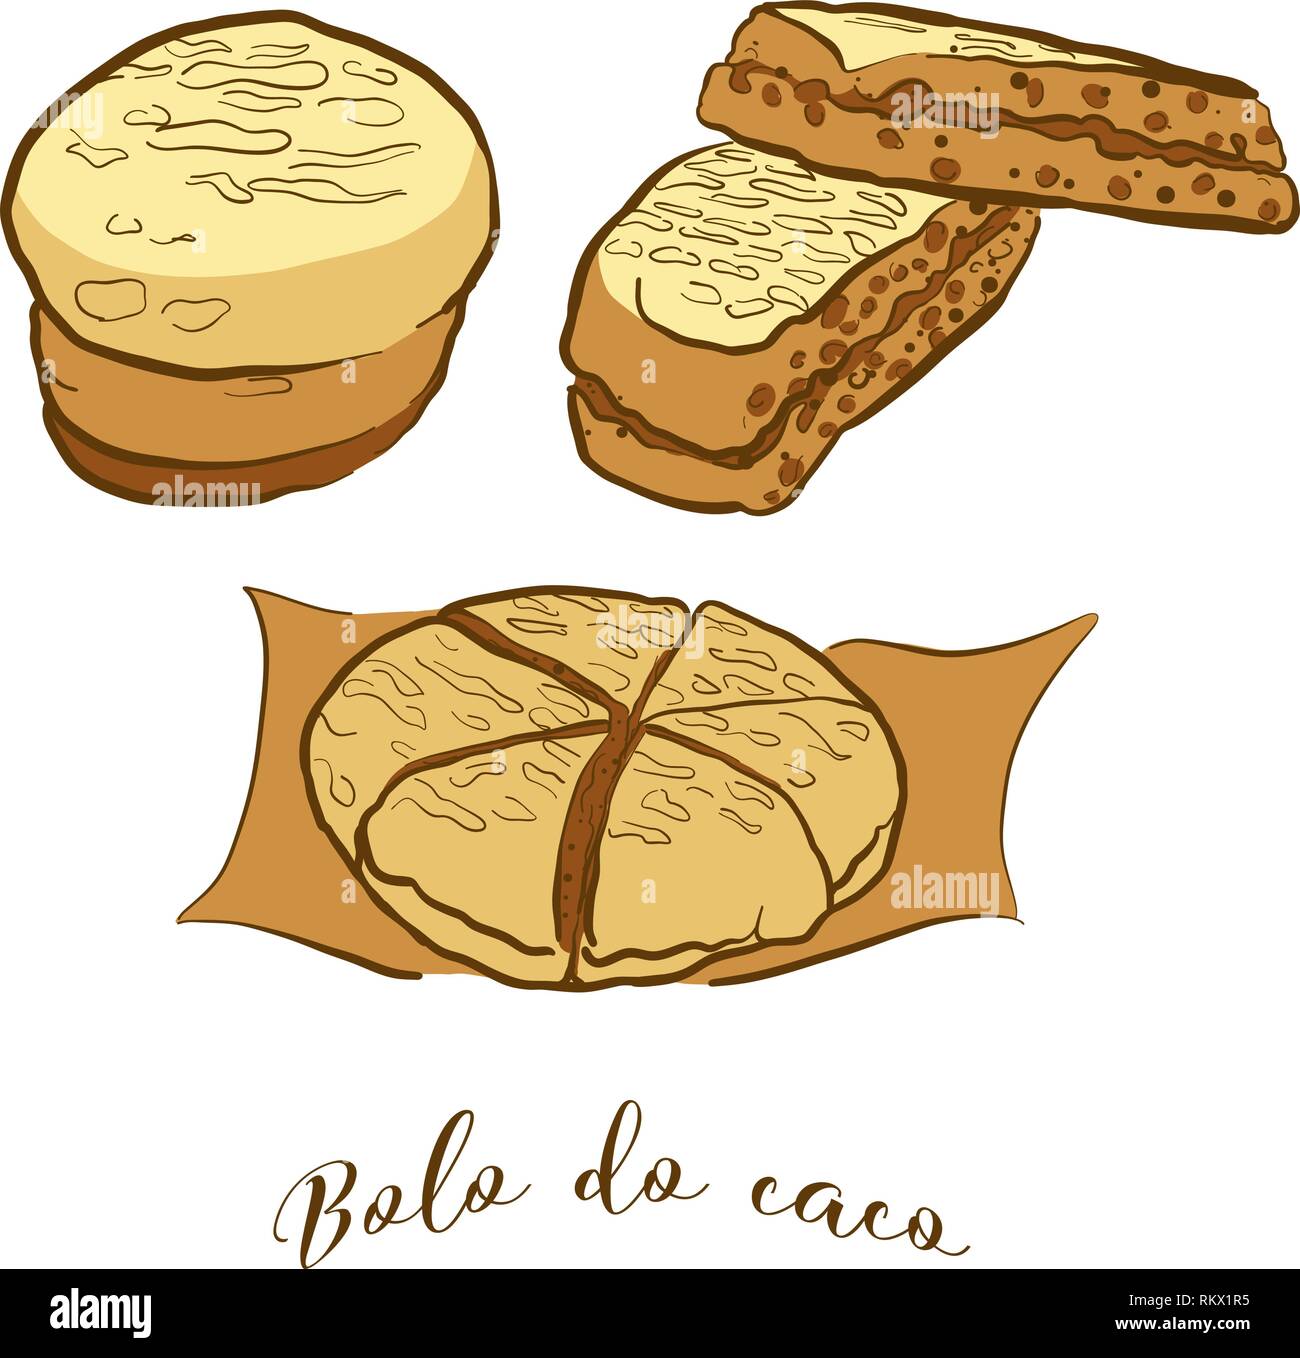 Farbige Skizzen von bolo do Caco Brot. Vektor Zeichnung von Fladenbrot Essen, in der Regel in Portugal, Madeira bekannt. Farbige Brot Abbildung Serie. Stock Vektor